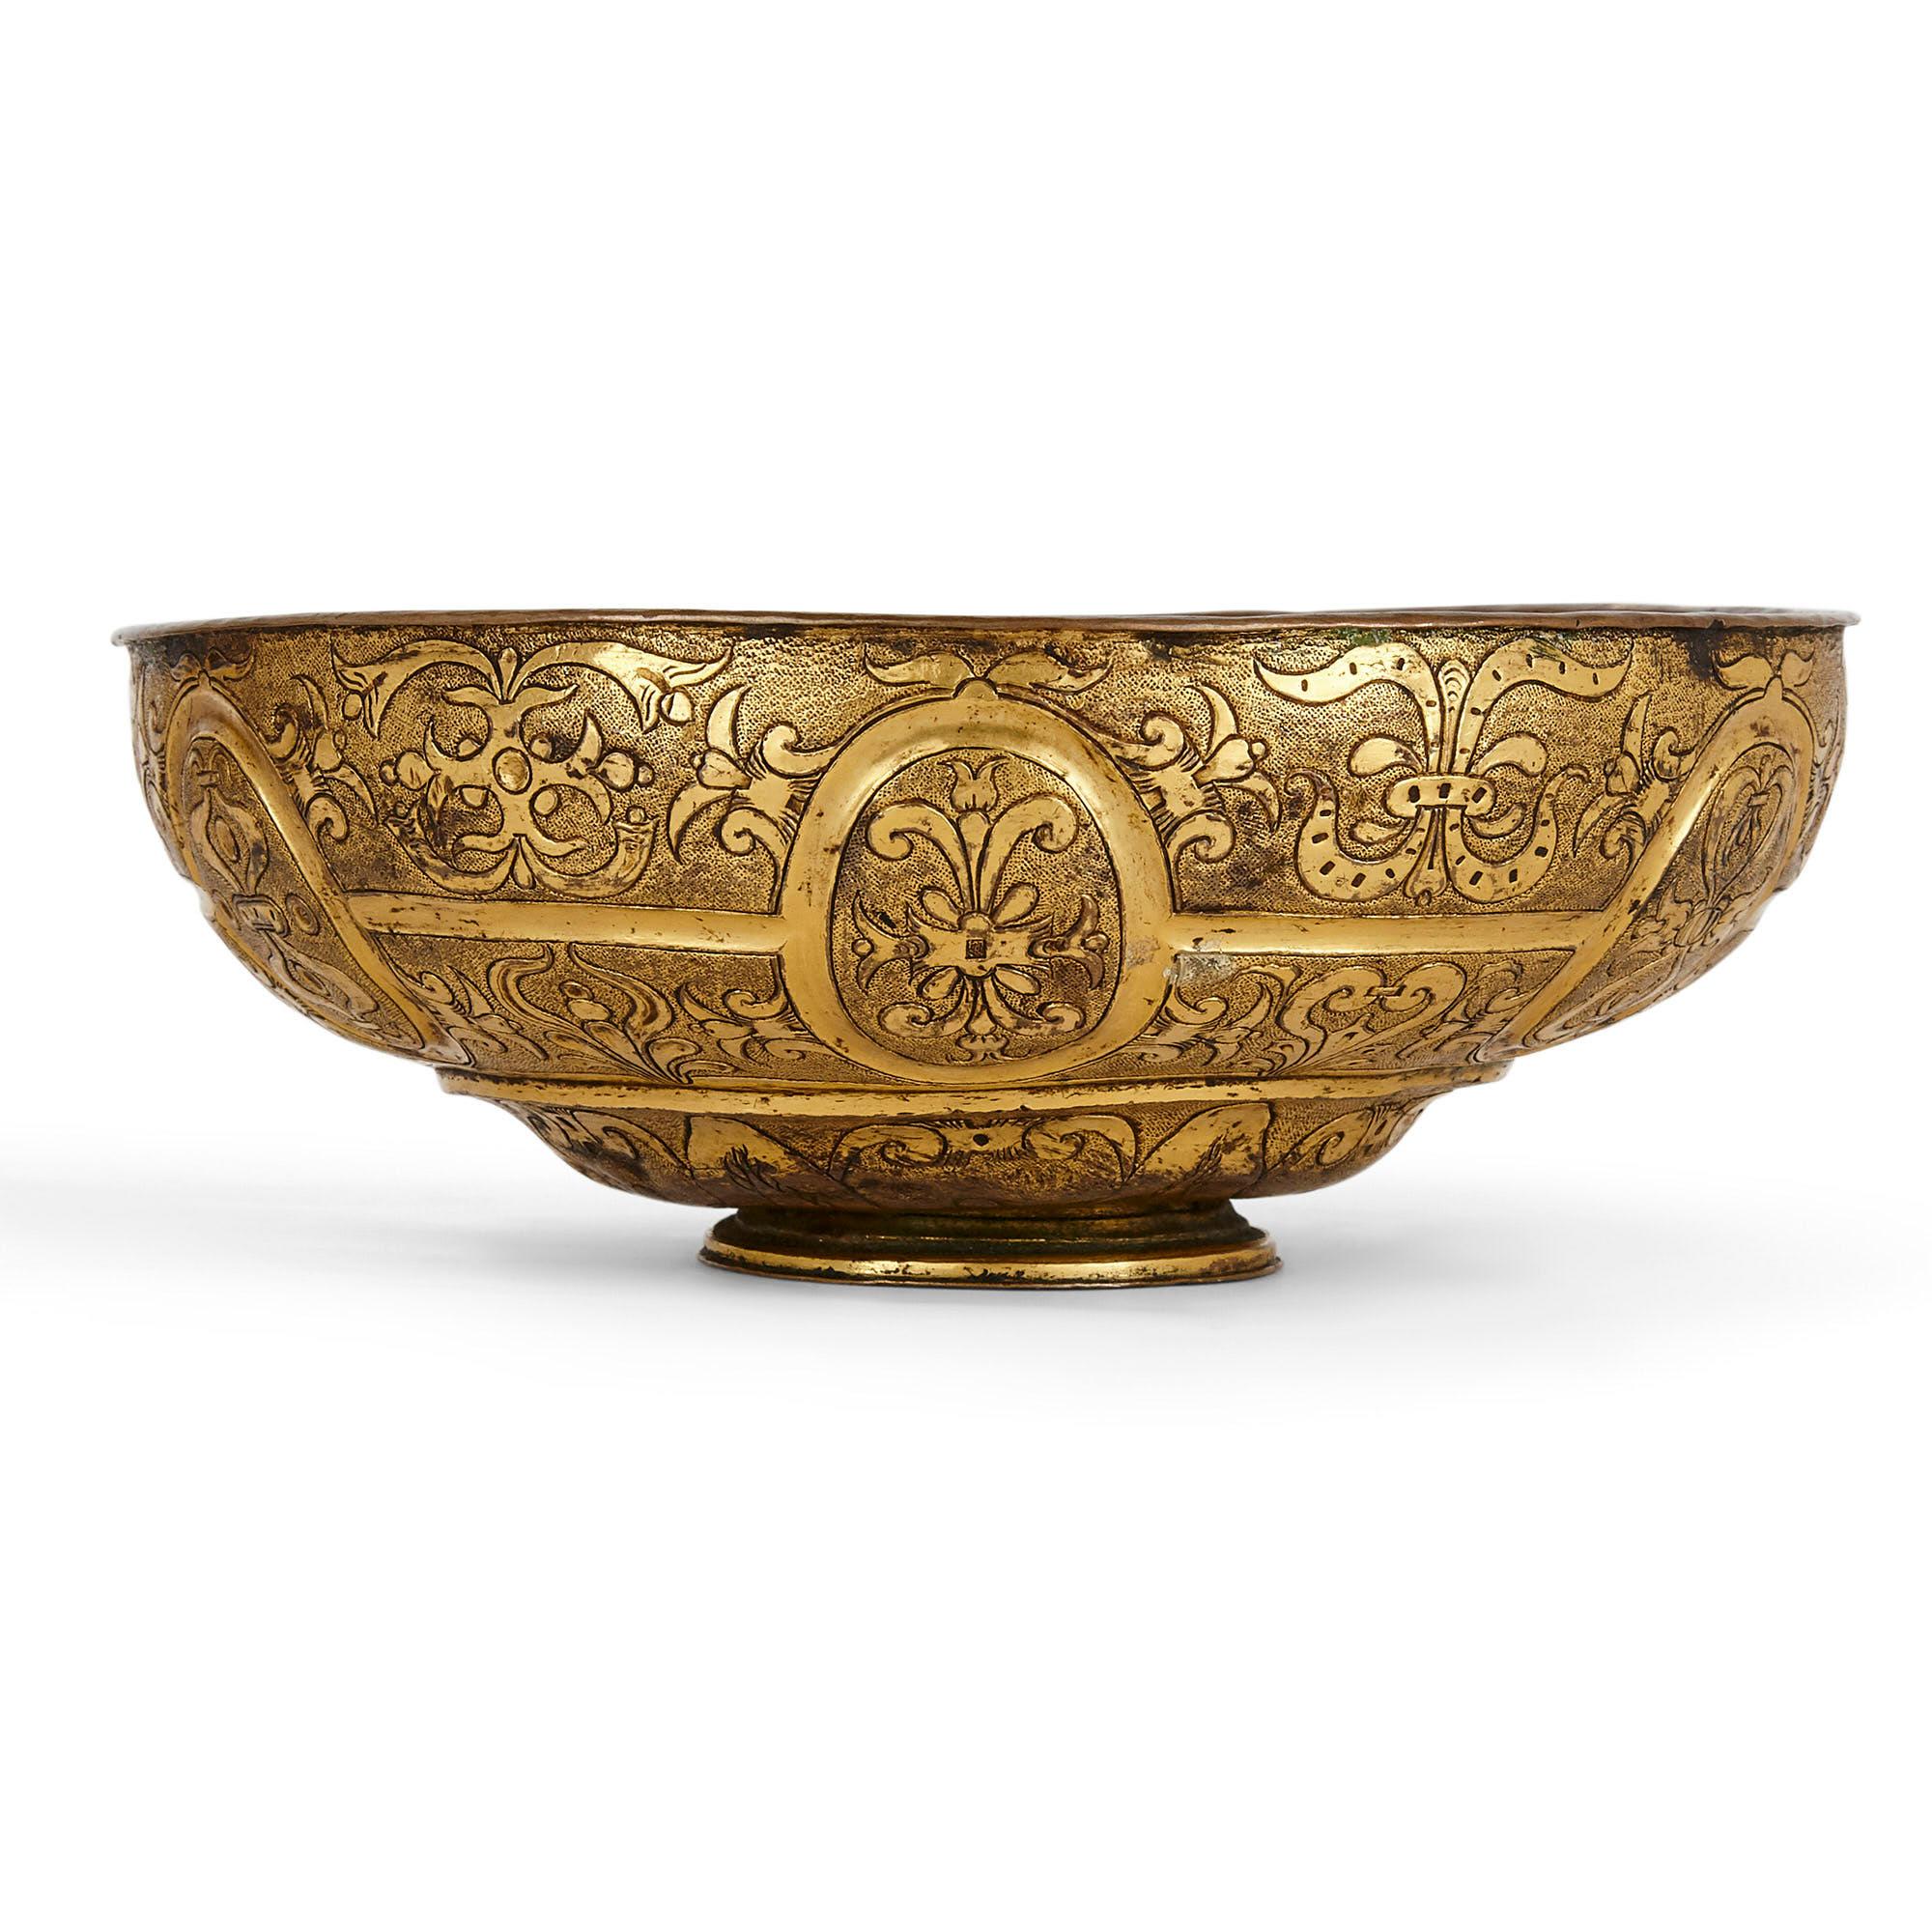 Paire de bols anciens en cuivre doré d'époque baroque vénitienne
Italien, XVIIe siècle
Dimensions : hauteur 7cm, diamètre 19cm

Cette paire rare de bols vénitiens du XVIIe siècle a été réalisée de manière exquise en cuivre doré et présente une